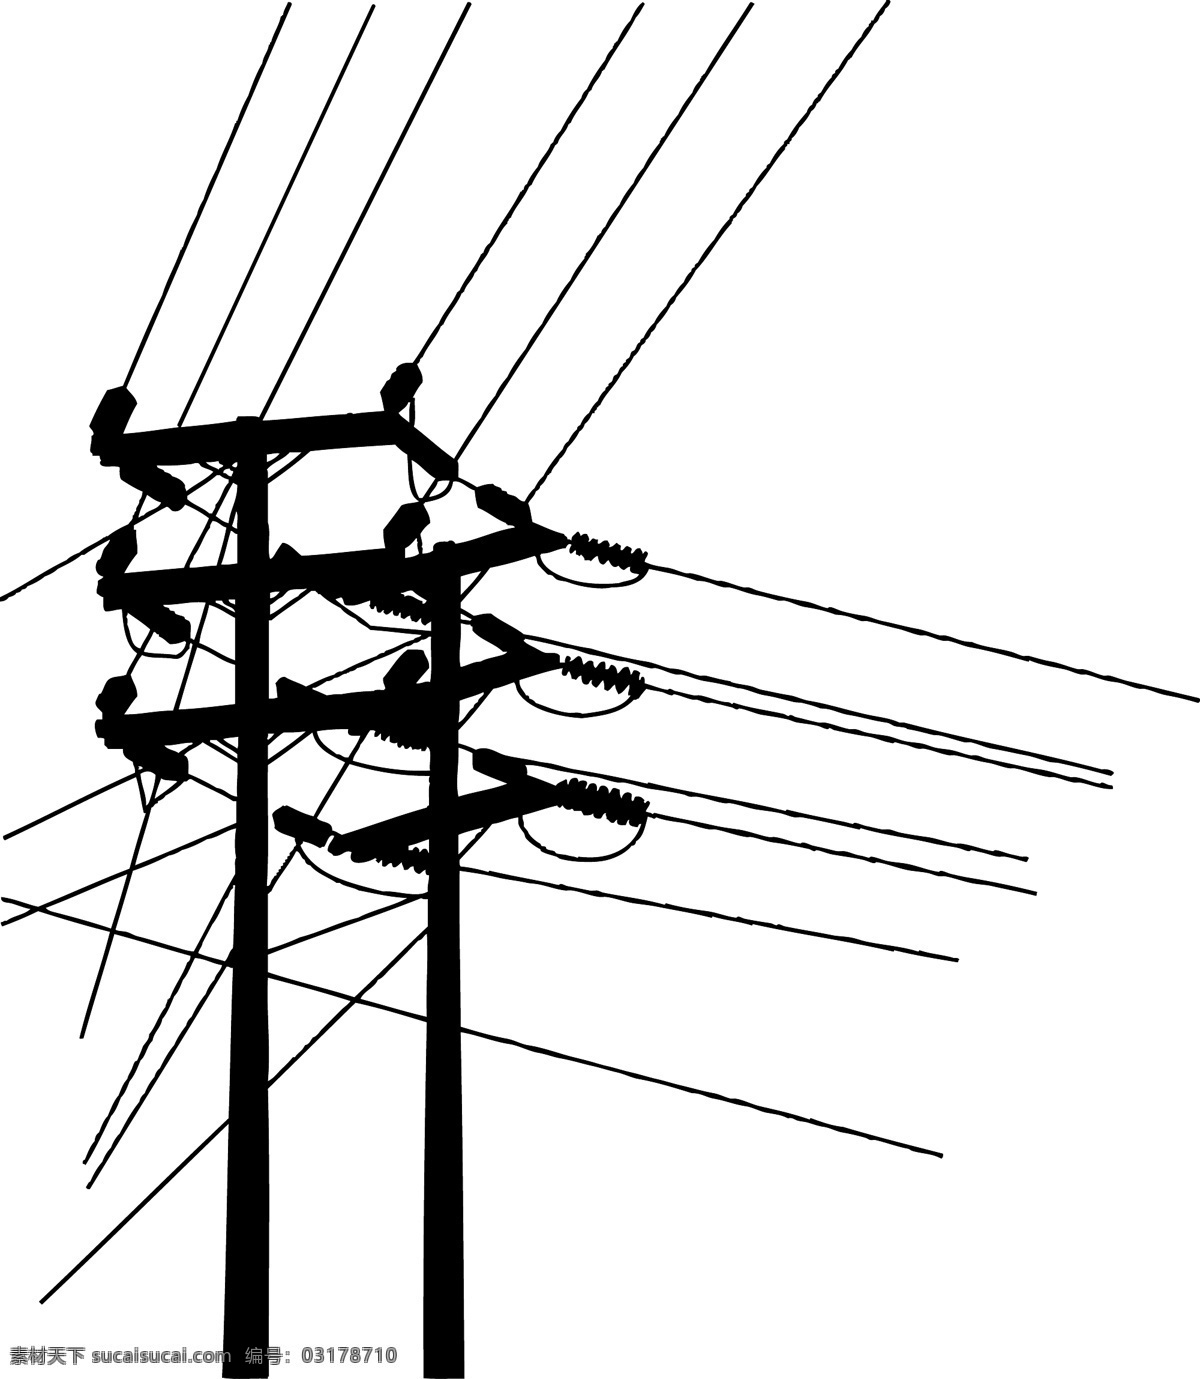 电线杆 矢量 电力 矢量素材 矢量图 其他矢量图